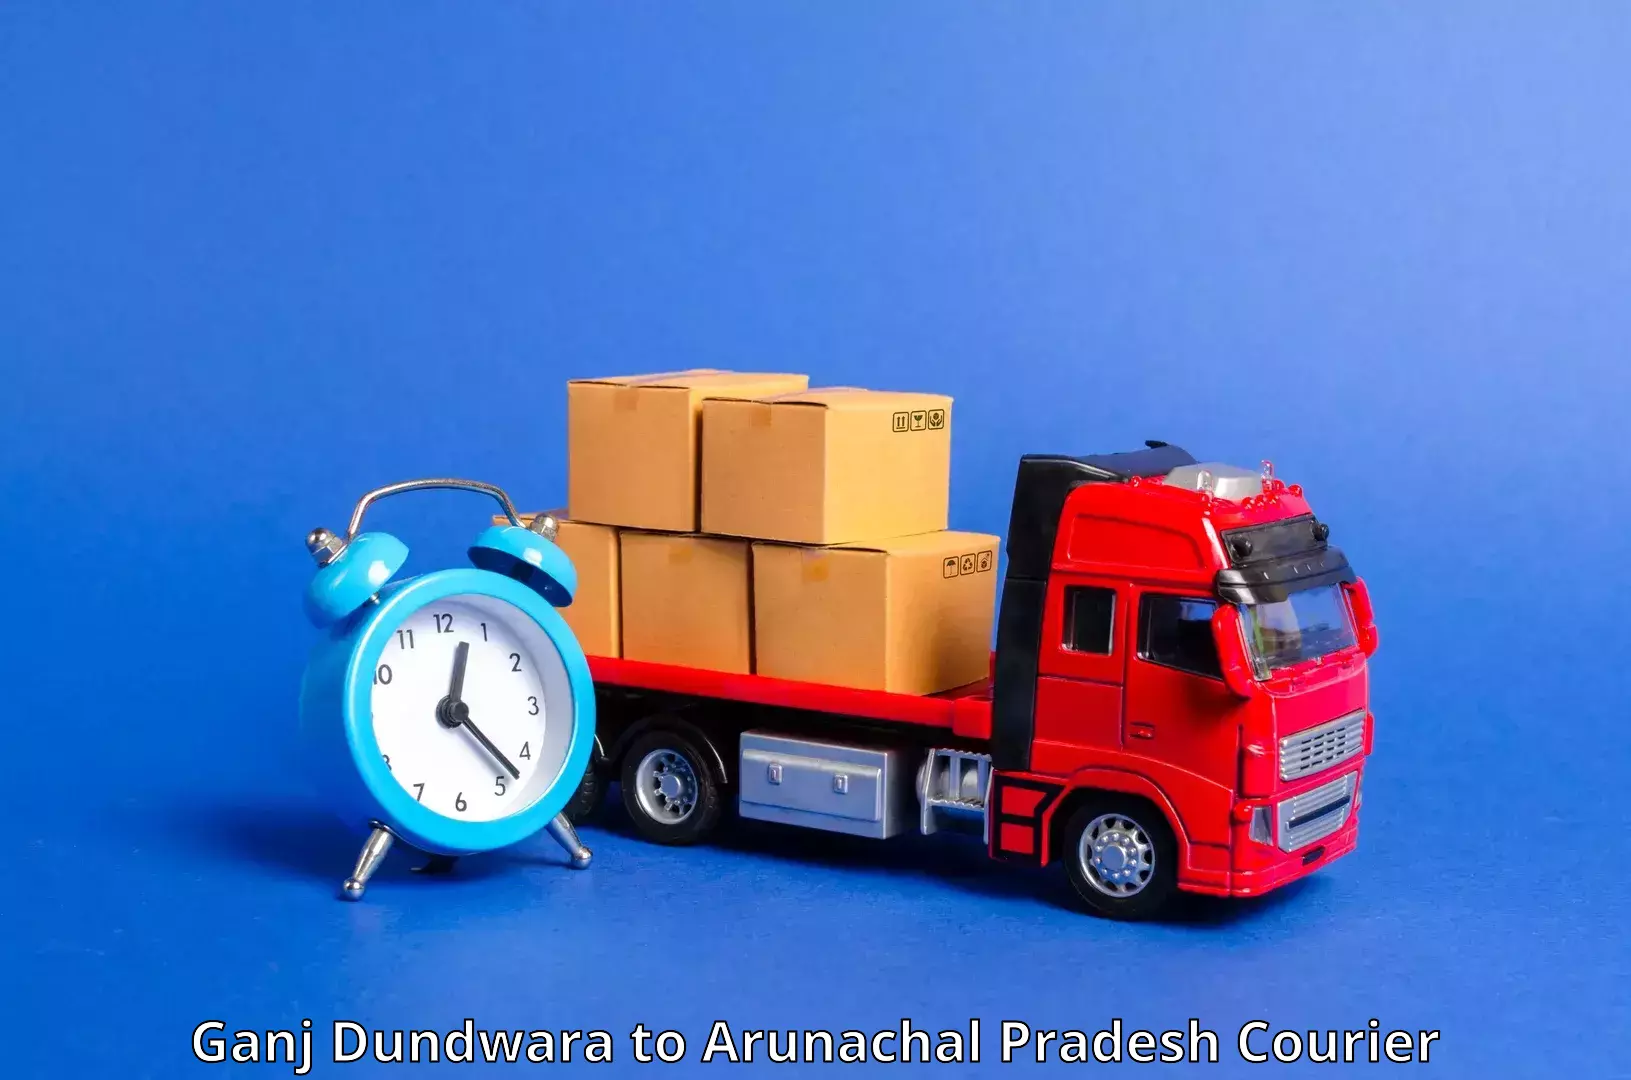 High-speed parcel service Ganj Dundwara to Namsai